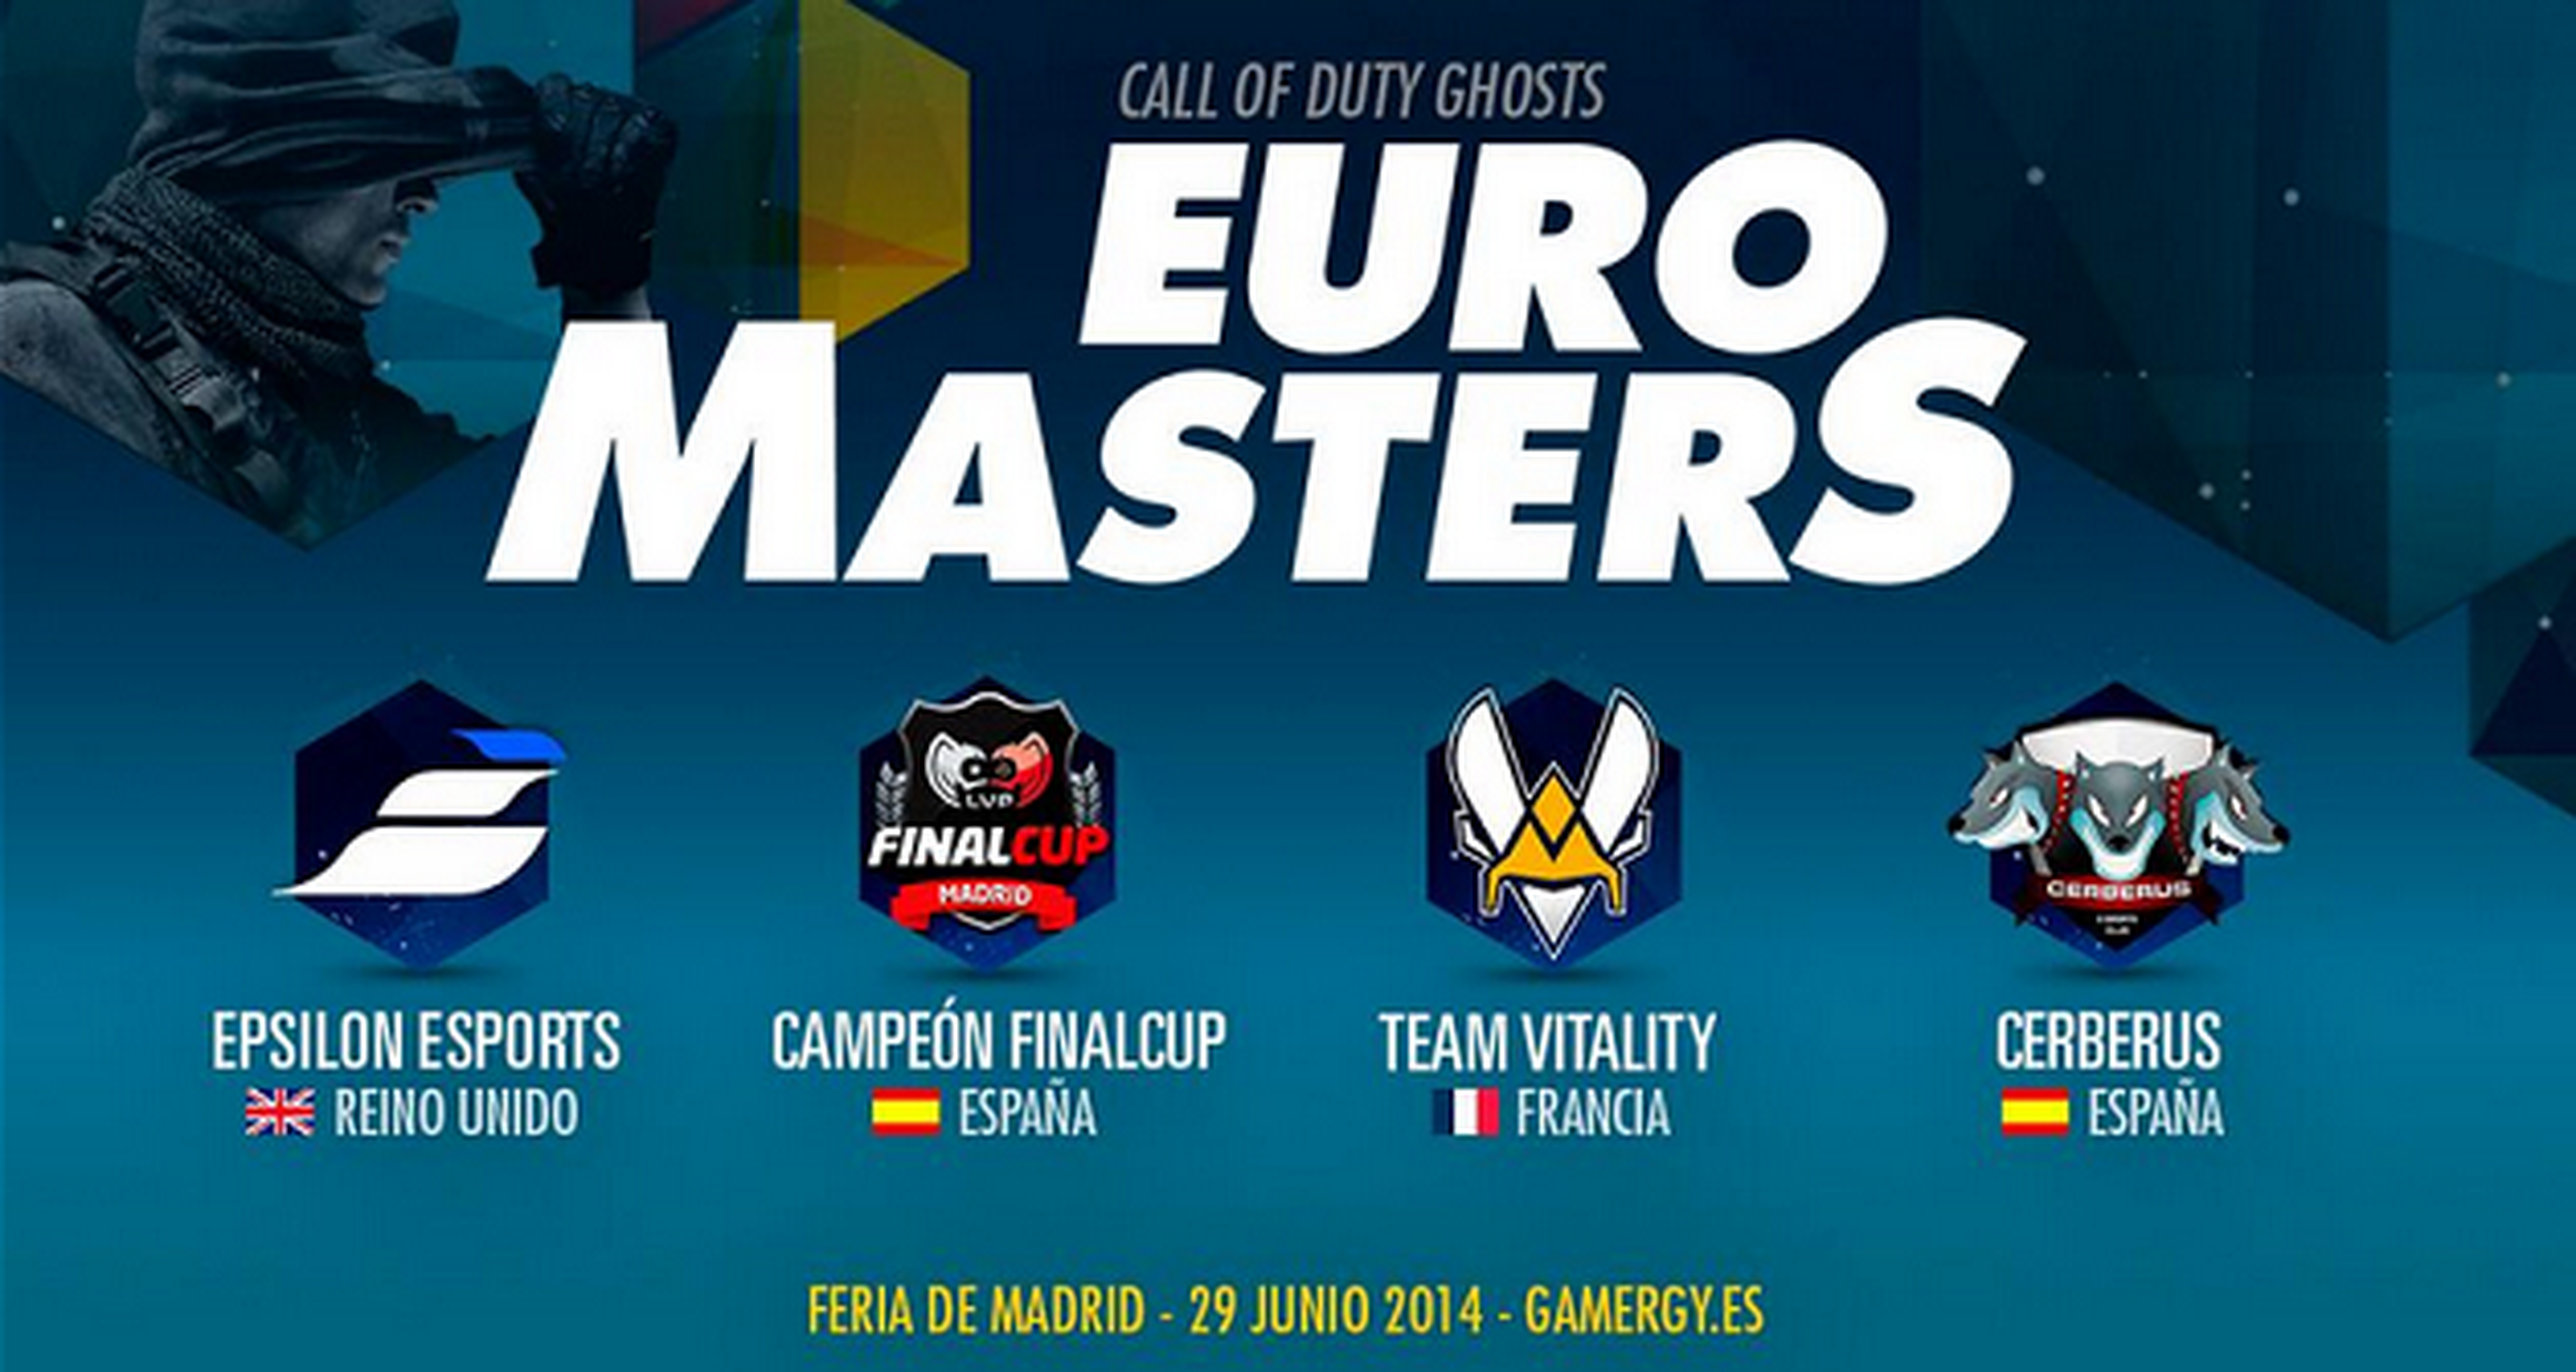 Los mejores equipos de Call of Duty: Ghosts de Europa en la EuroMasters Cup de Gamergy